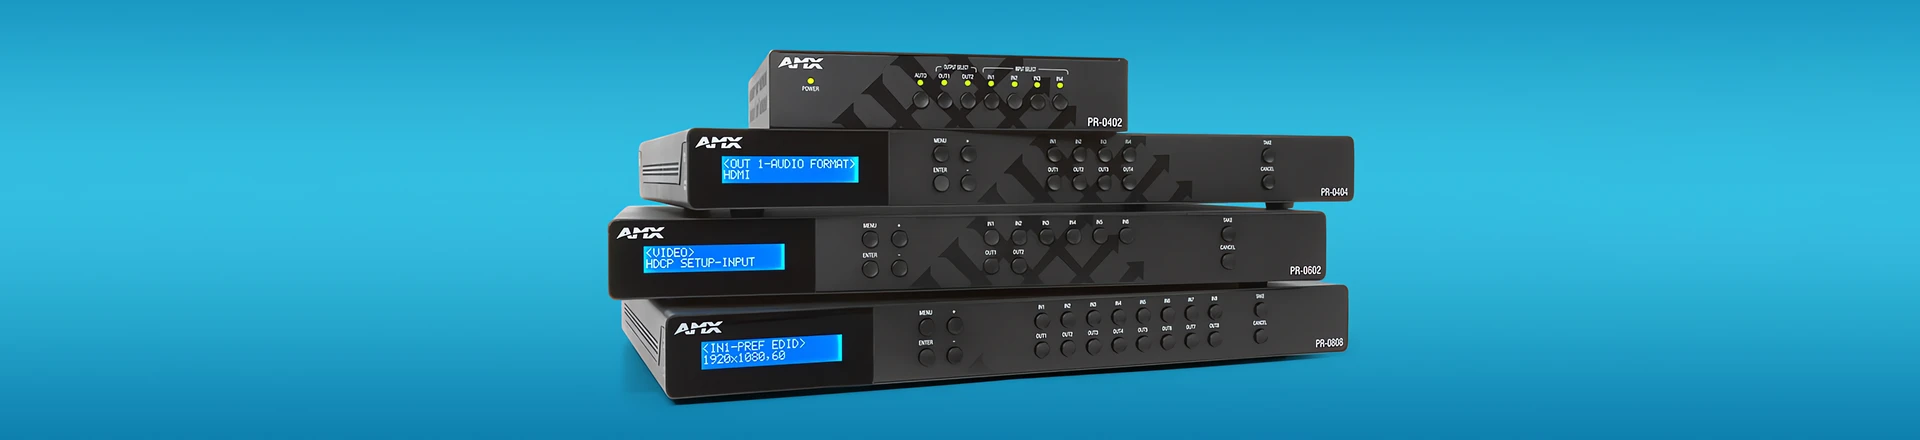 AVX Precis PR i VPX sprawdzi się w dystrybucji wideo dla małych i średnich instalacji AV